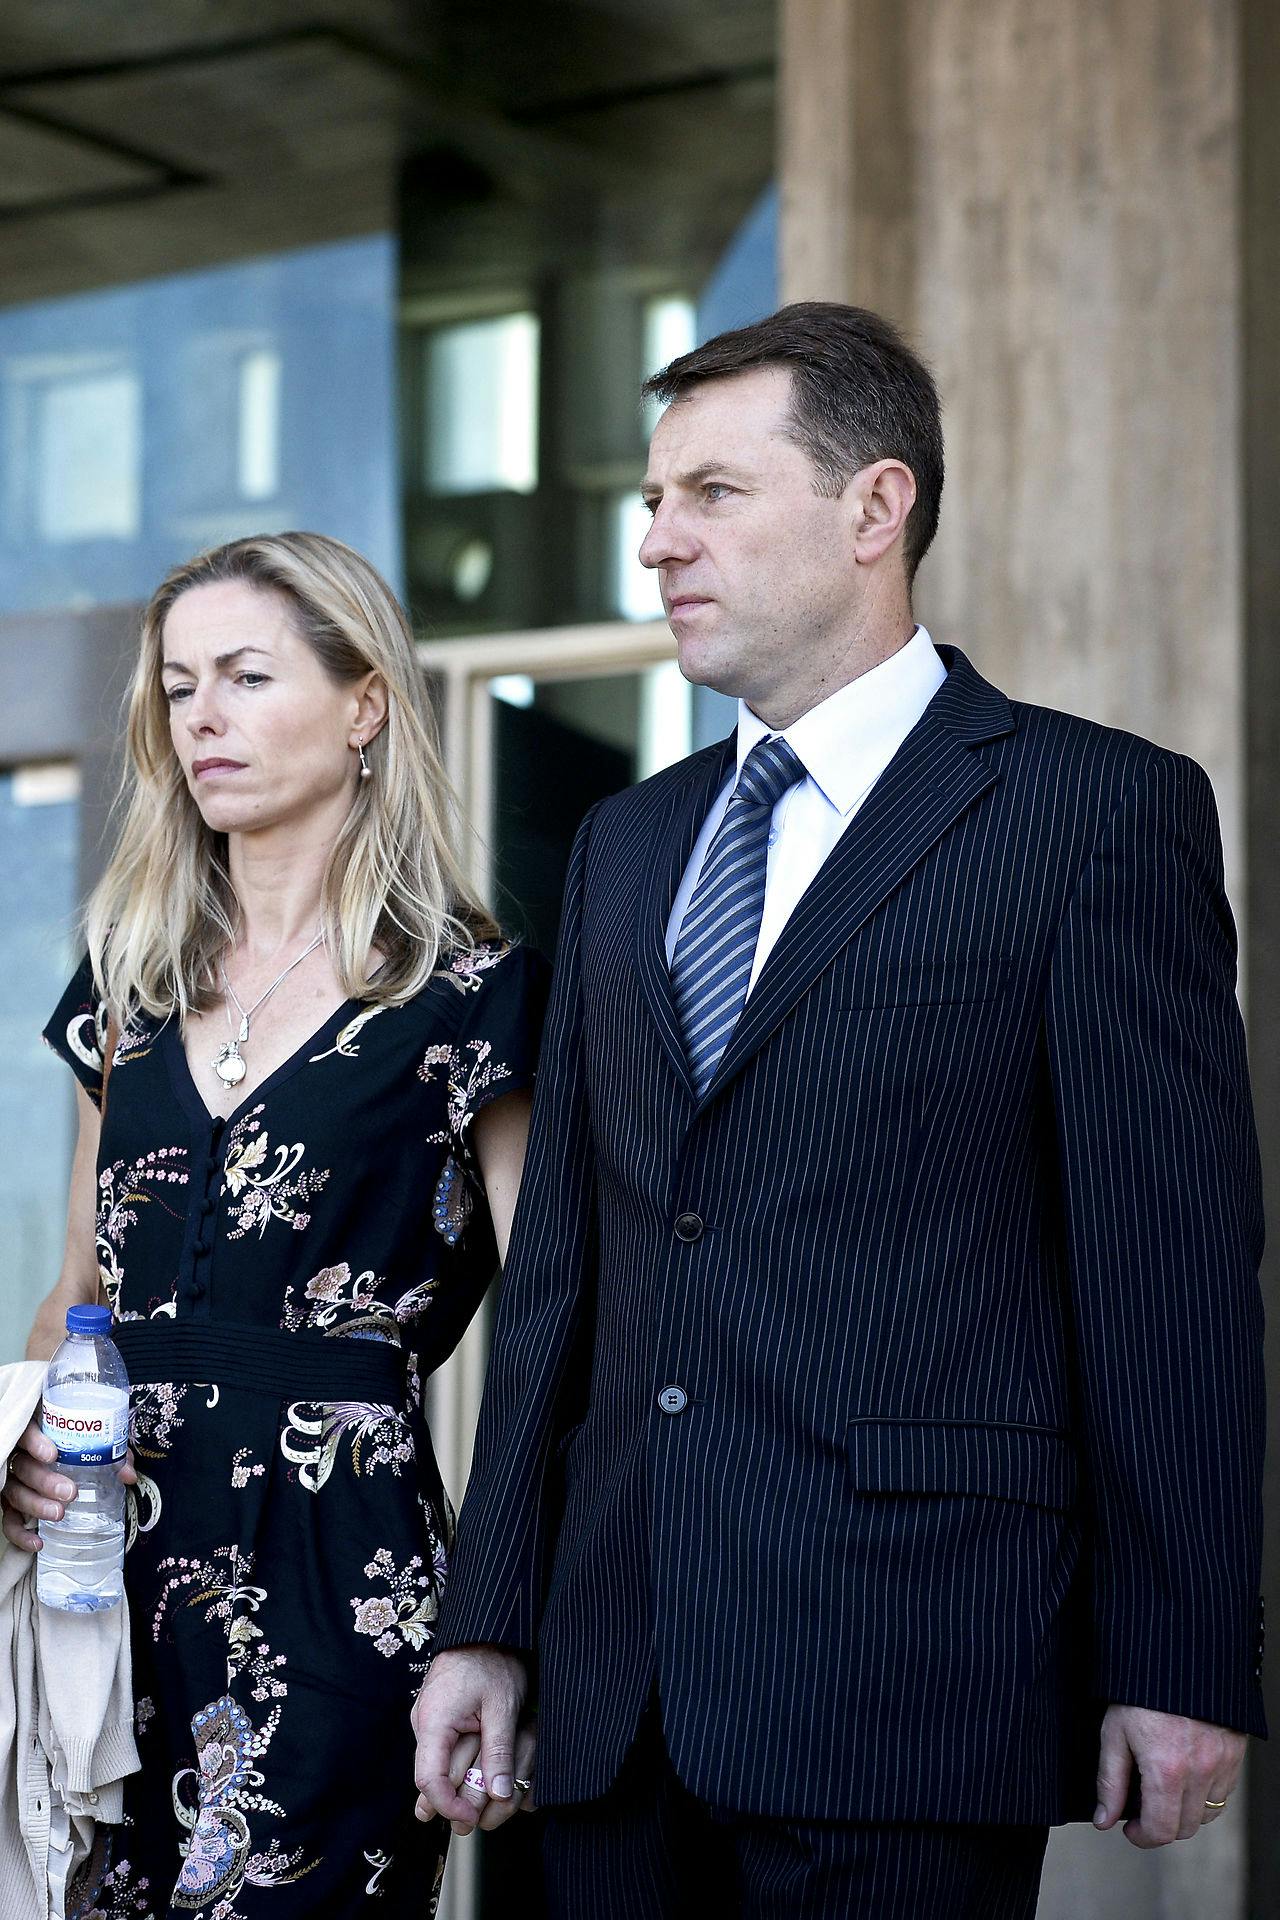 Kate McCann og hendes ægtemand Gerry McCann forlader retten i Lissabon i forbindelse med sagen om den portugisiske efterforsker.&nbsp;
